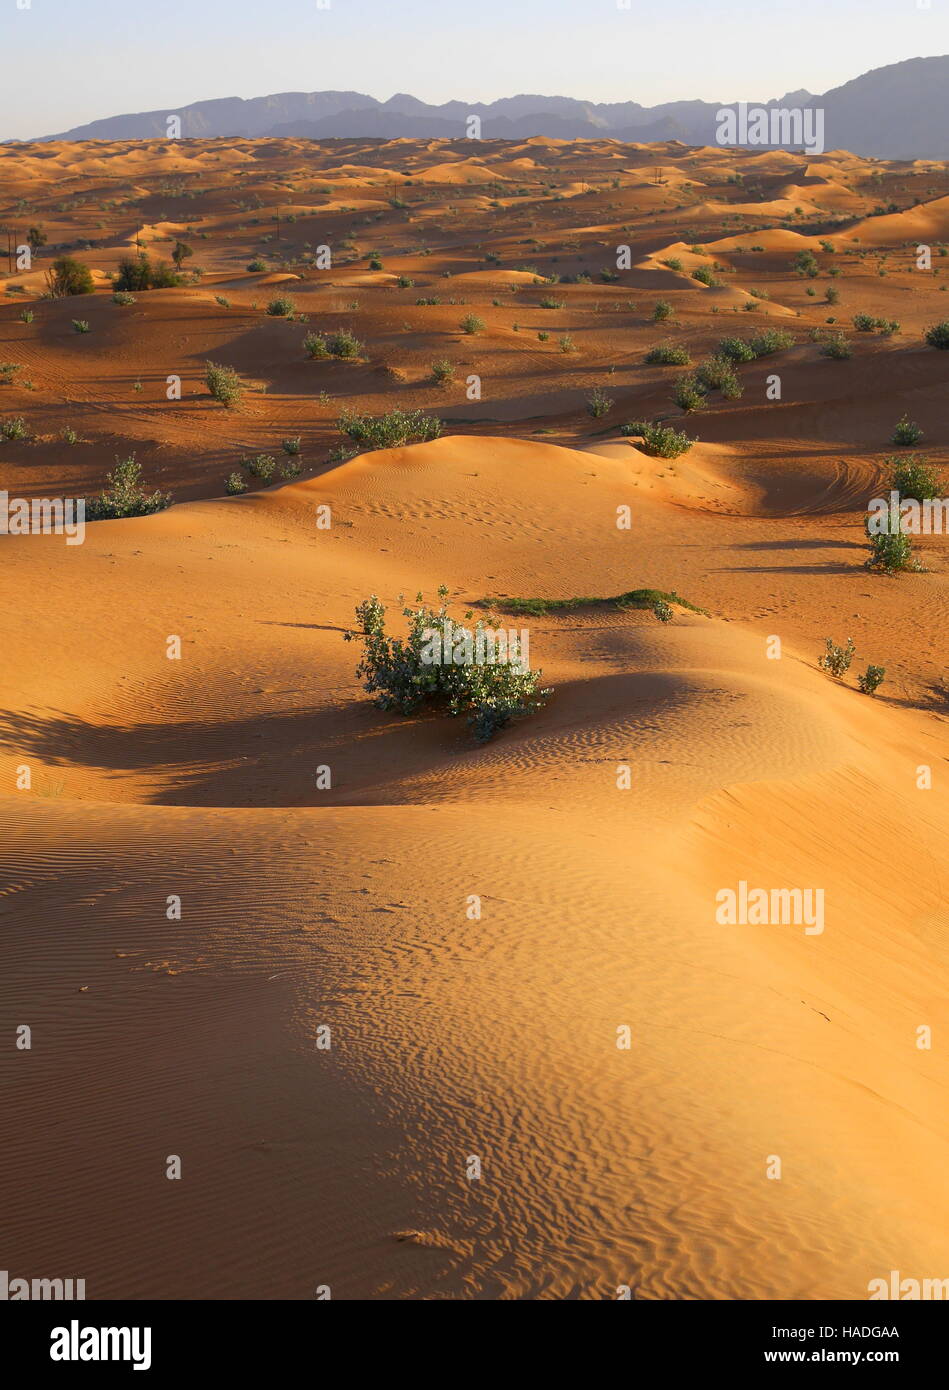 Le dune di sabbia, Abu Dhabi Emirato, Emirati Arabi Uniti. La vegetazione è Sodoma apple (calotropis procera). Le montagne sono in Oman. Foto Stock